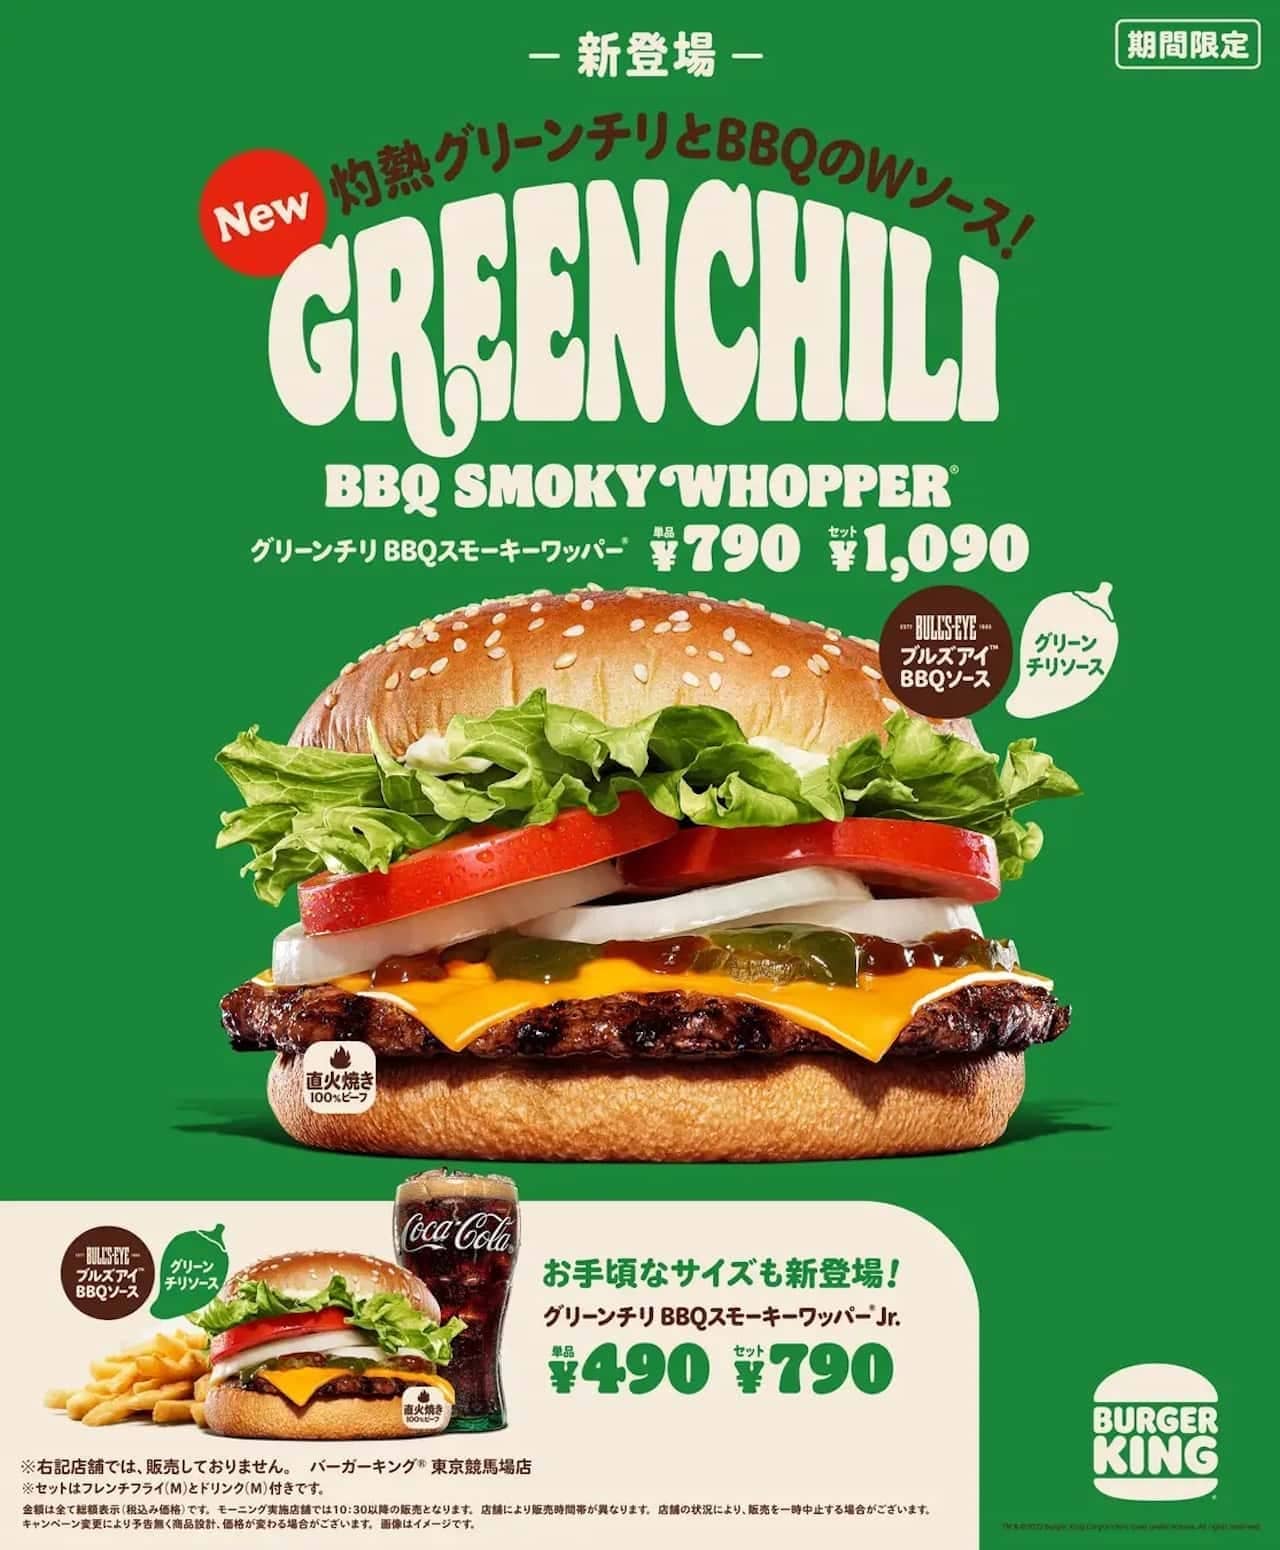 Burger King "Green Chili BBQ Smoky Whopper"